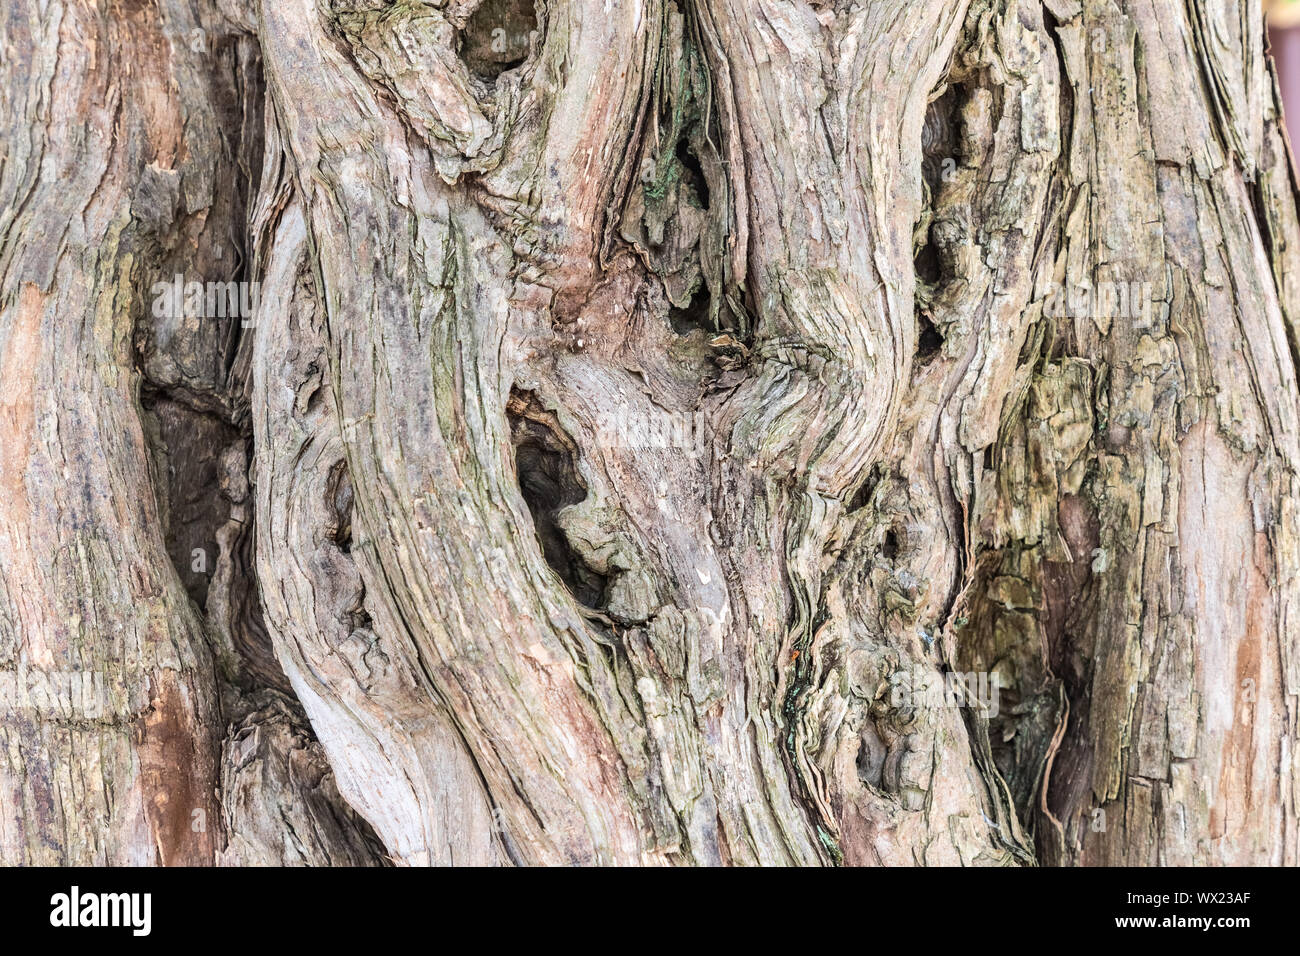 old sandalwood trunk closeup Stock Photo